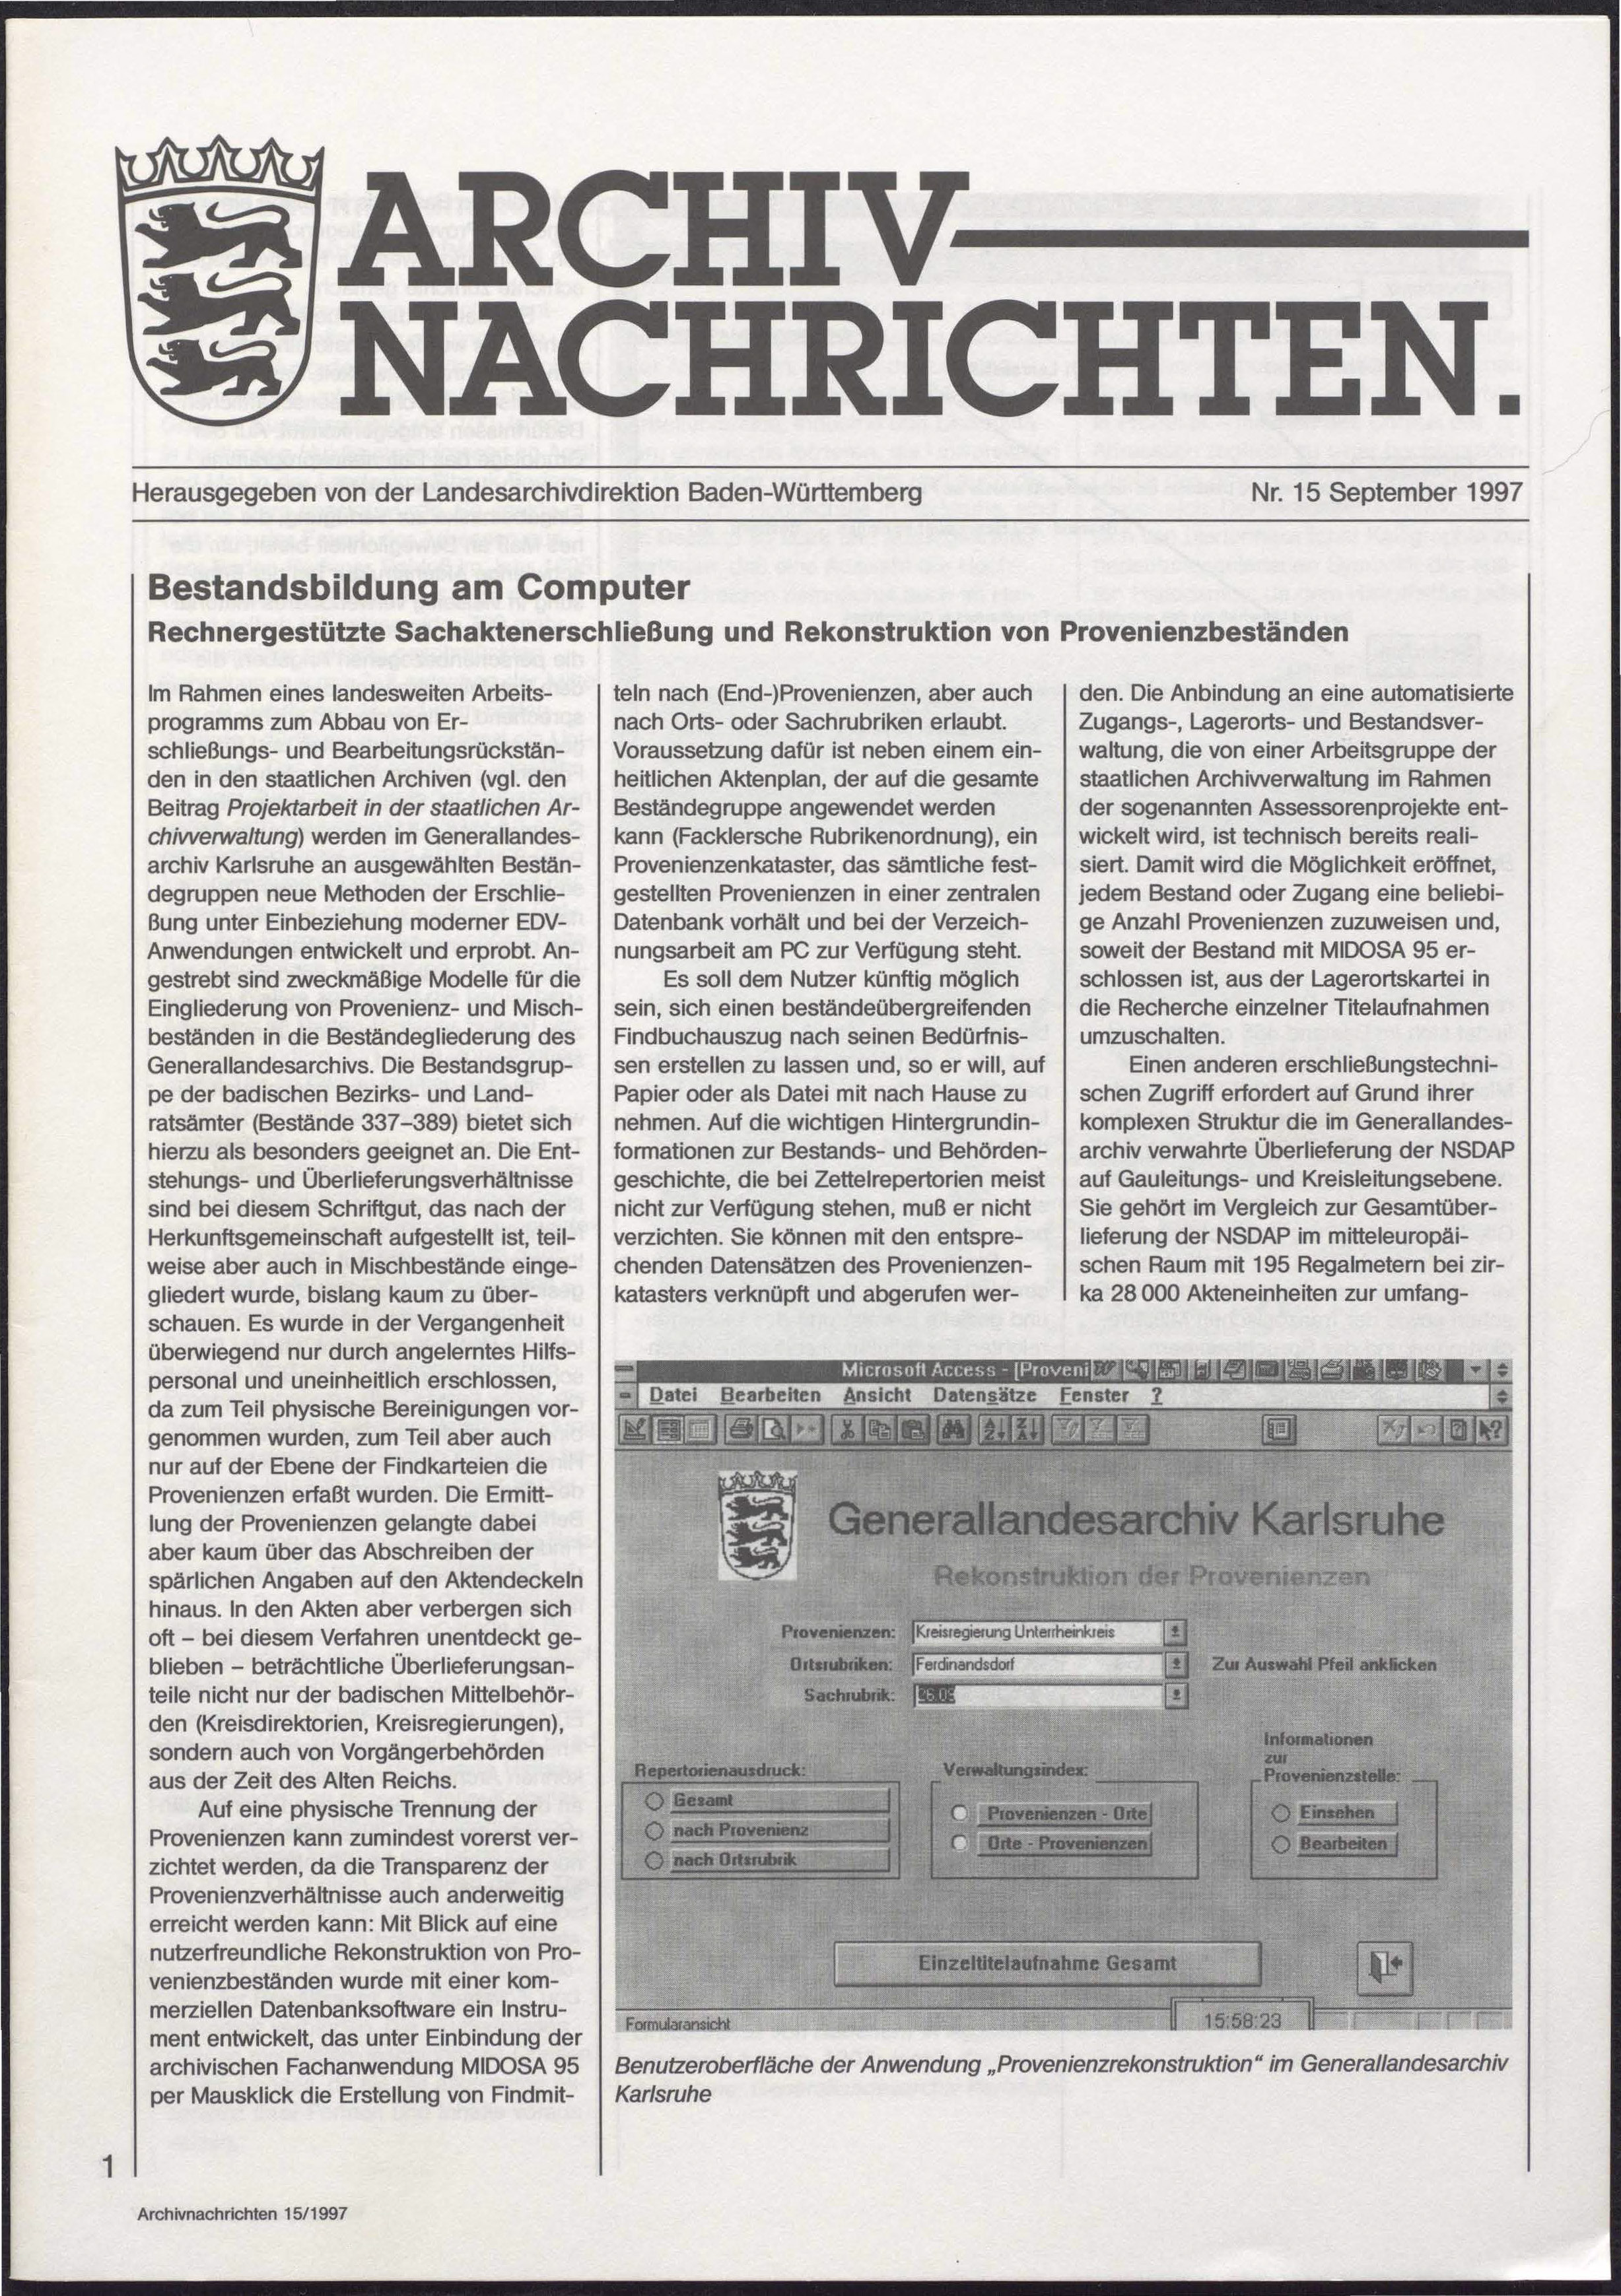                     Ansehen Nr. 15 (1997): Archivnachrichten
                